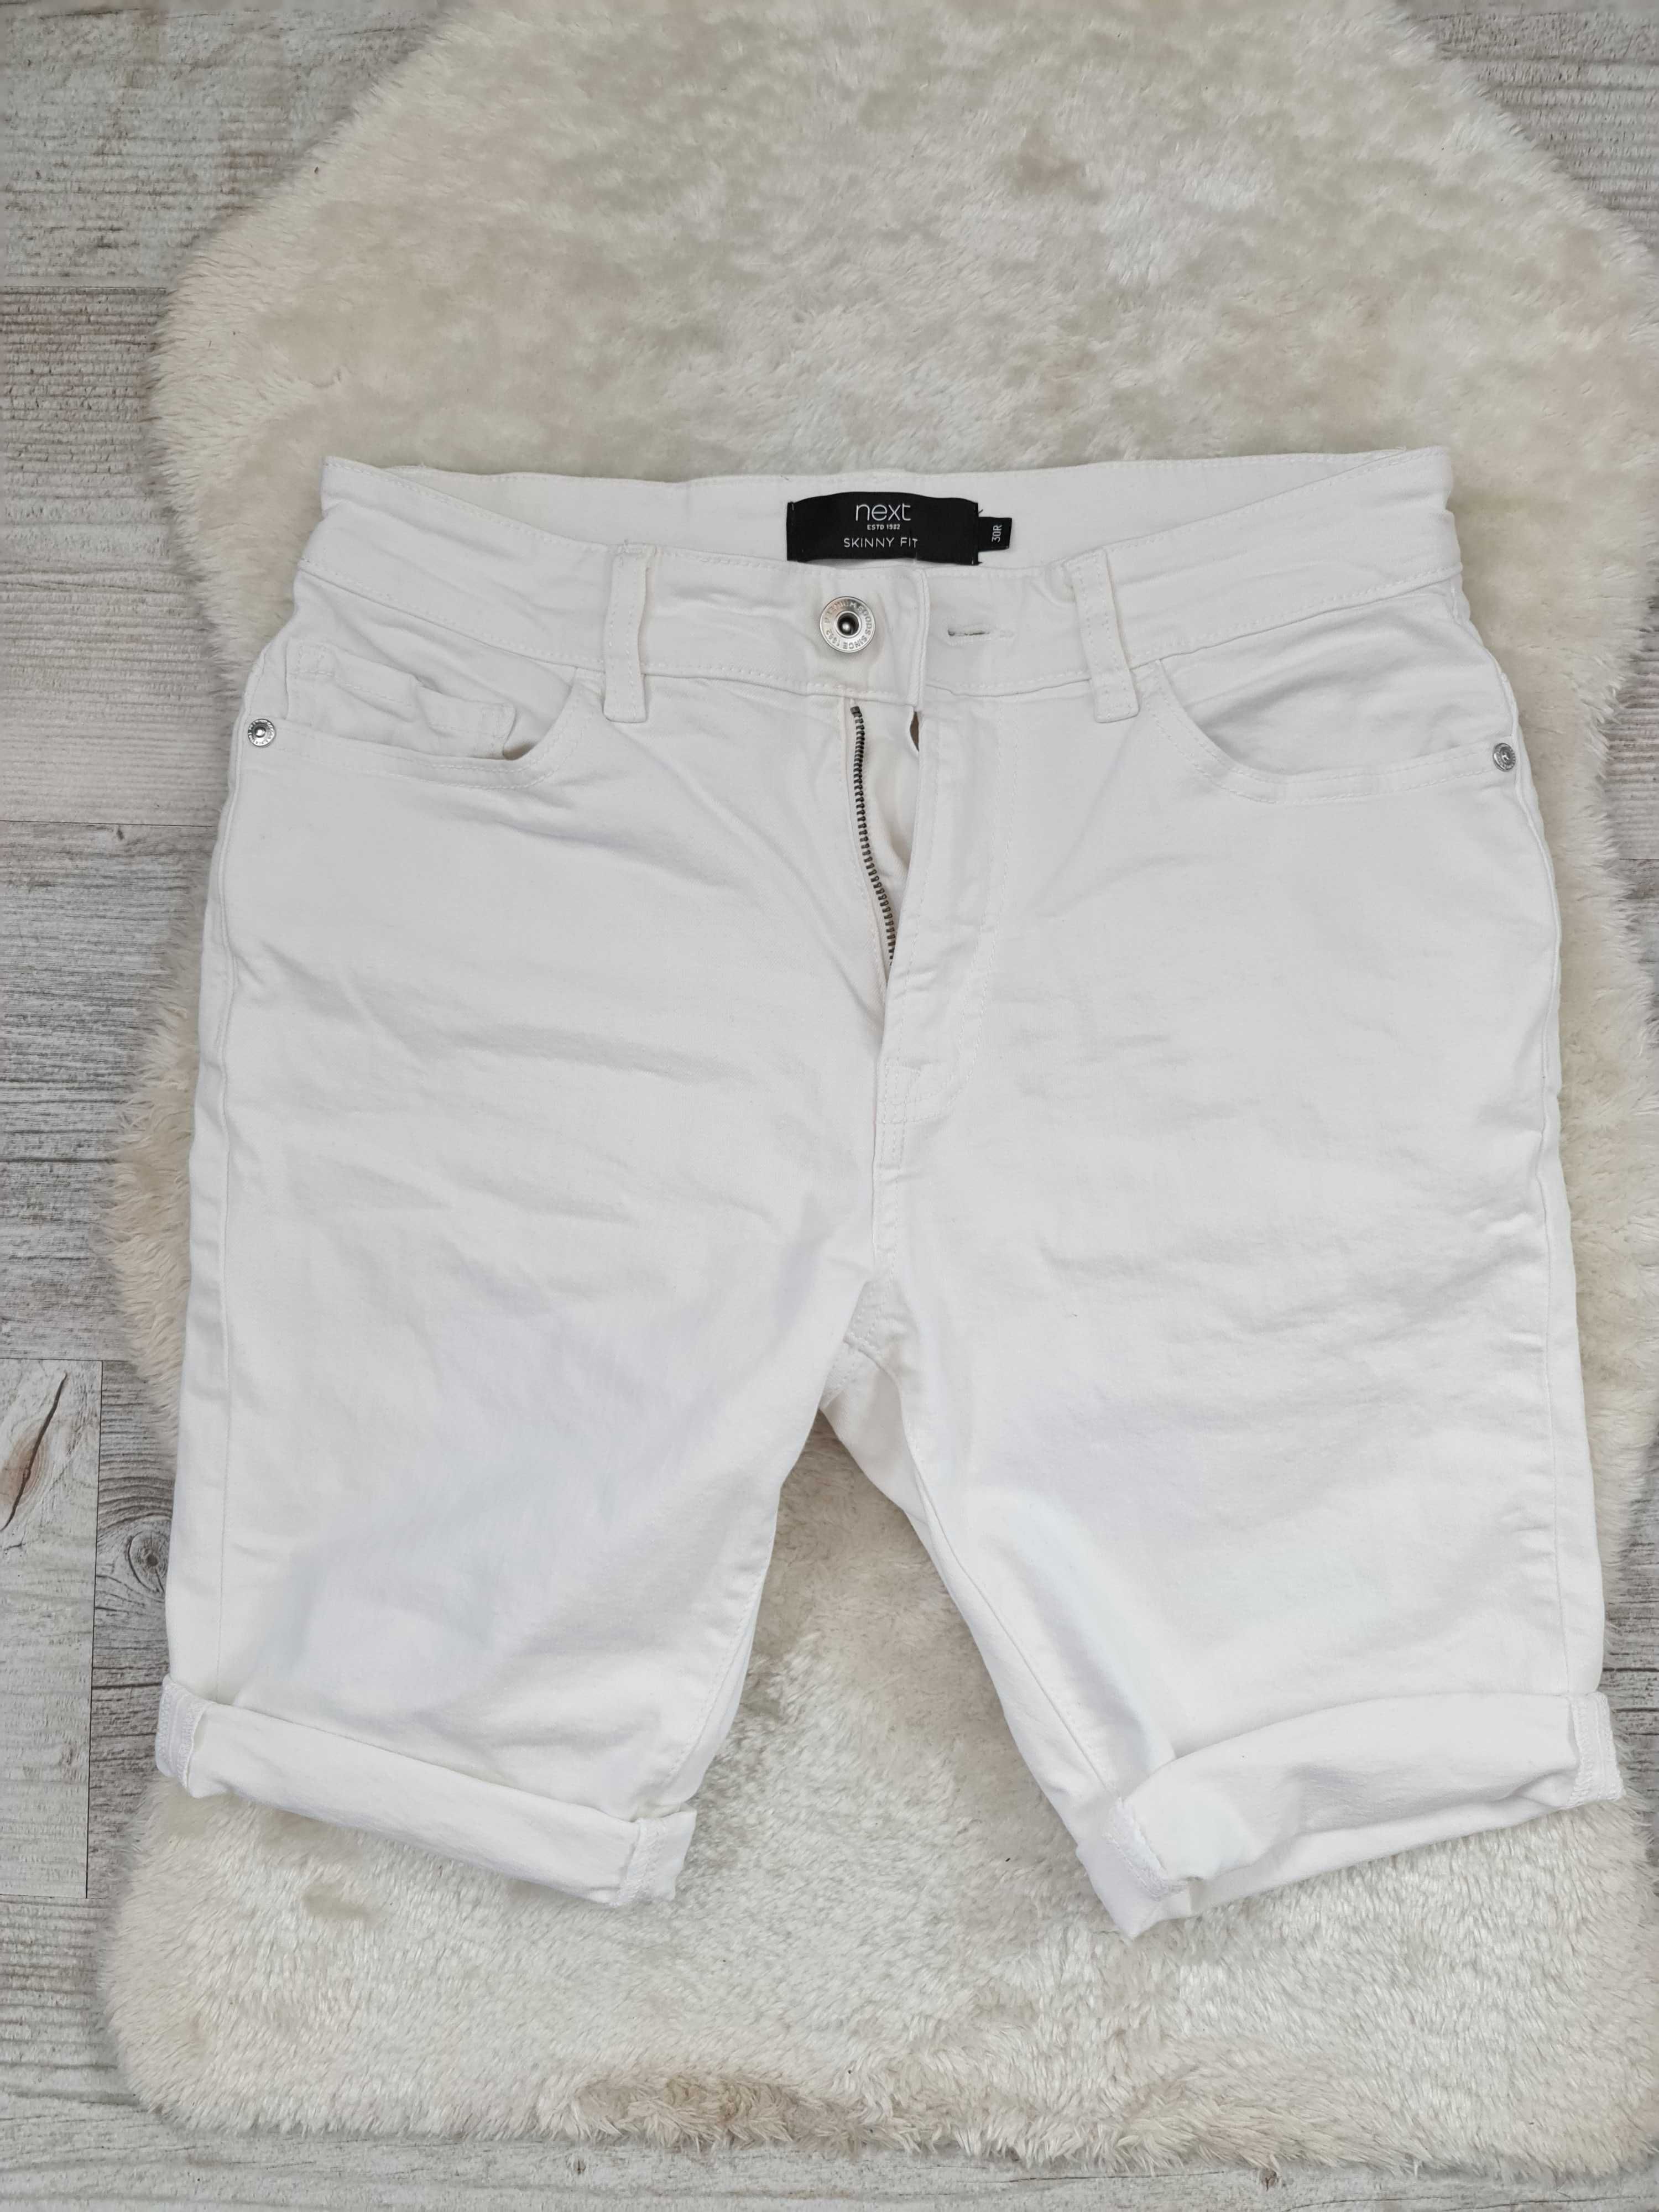 Białe Spodenki Jeans Next Szorty Dżinsowe Rozmiar S / M 30 / 38